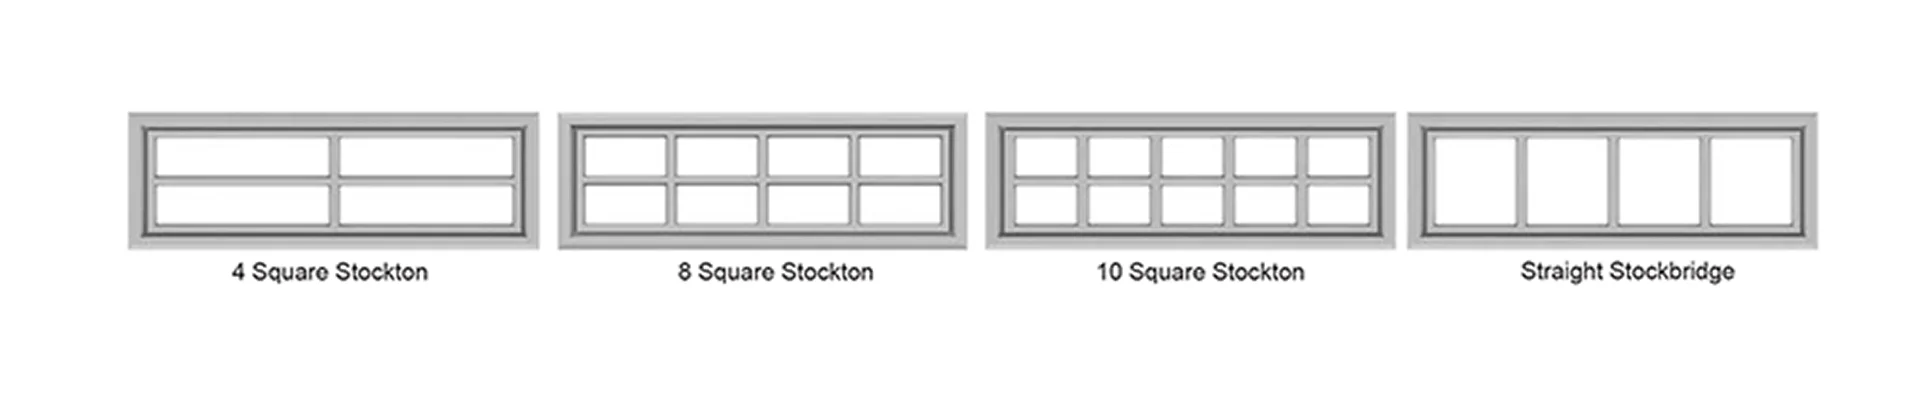 Elton Long Panel insert square Stockton designs